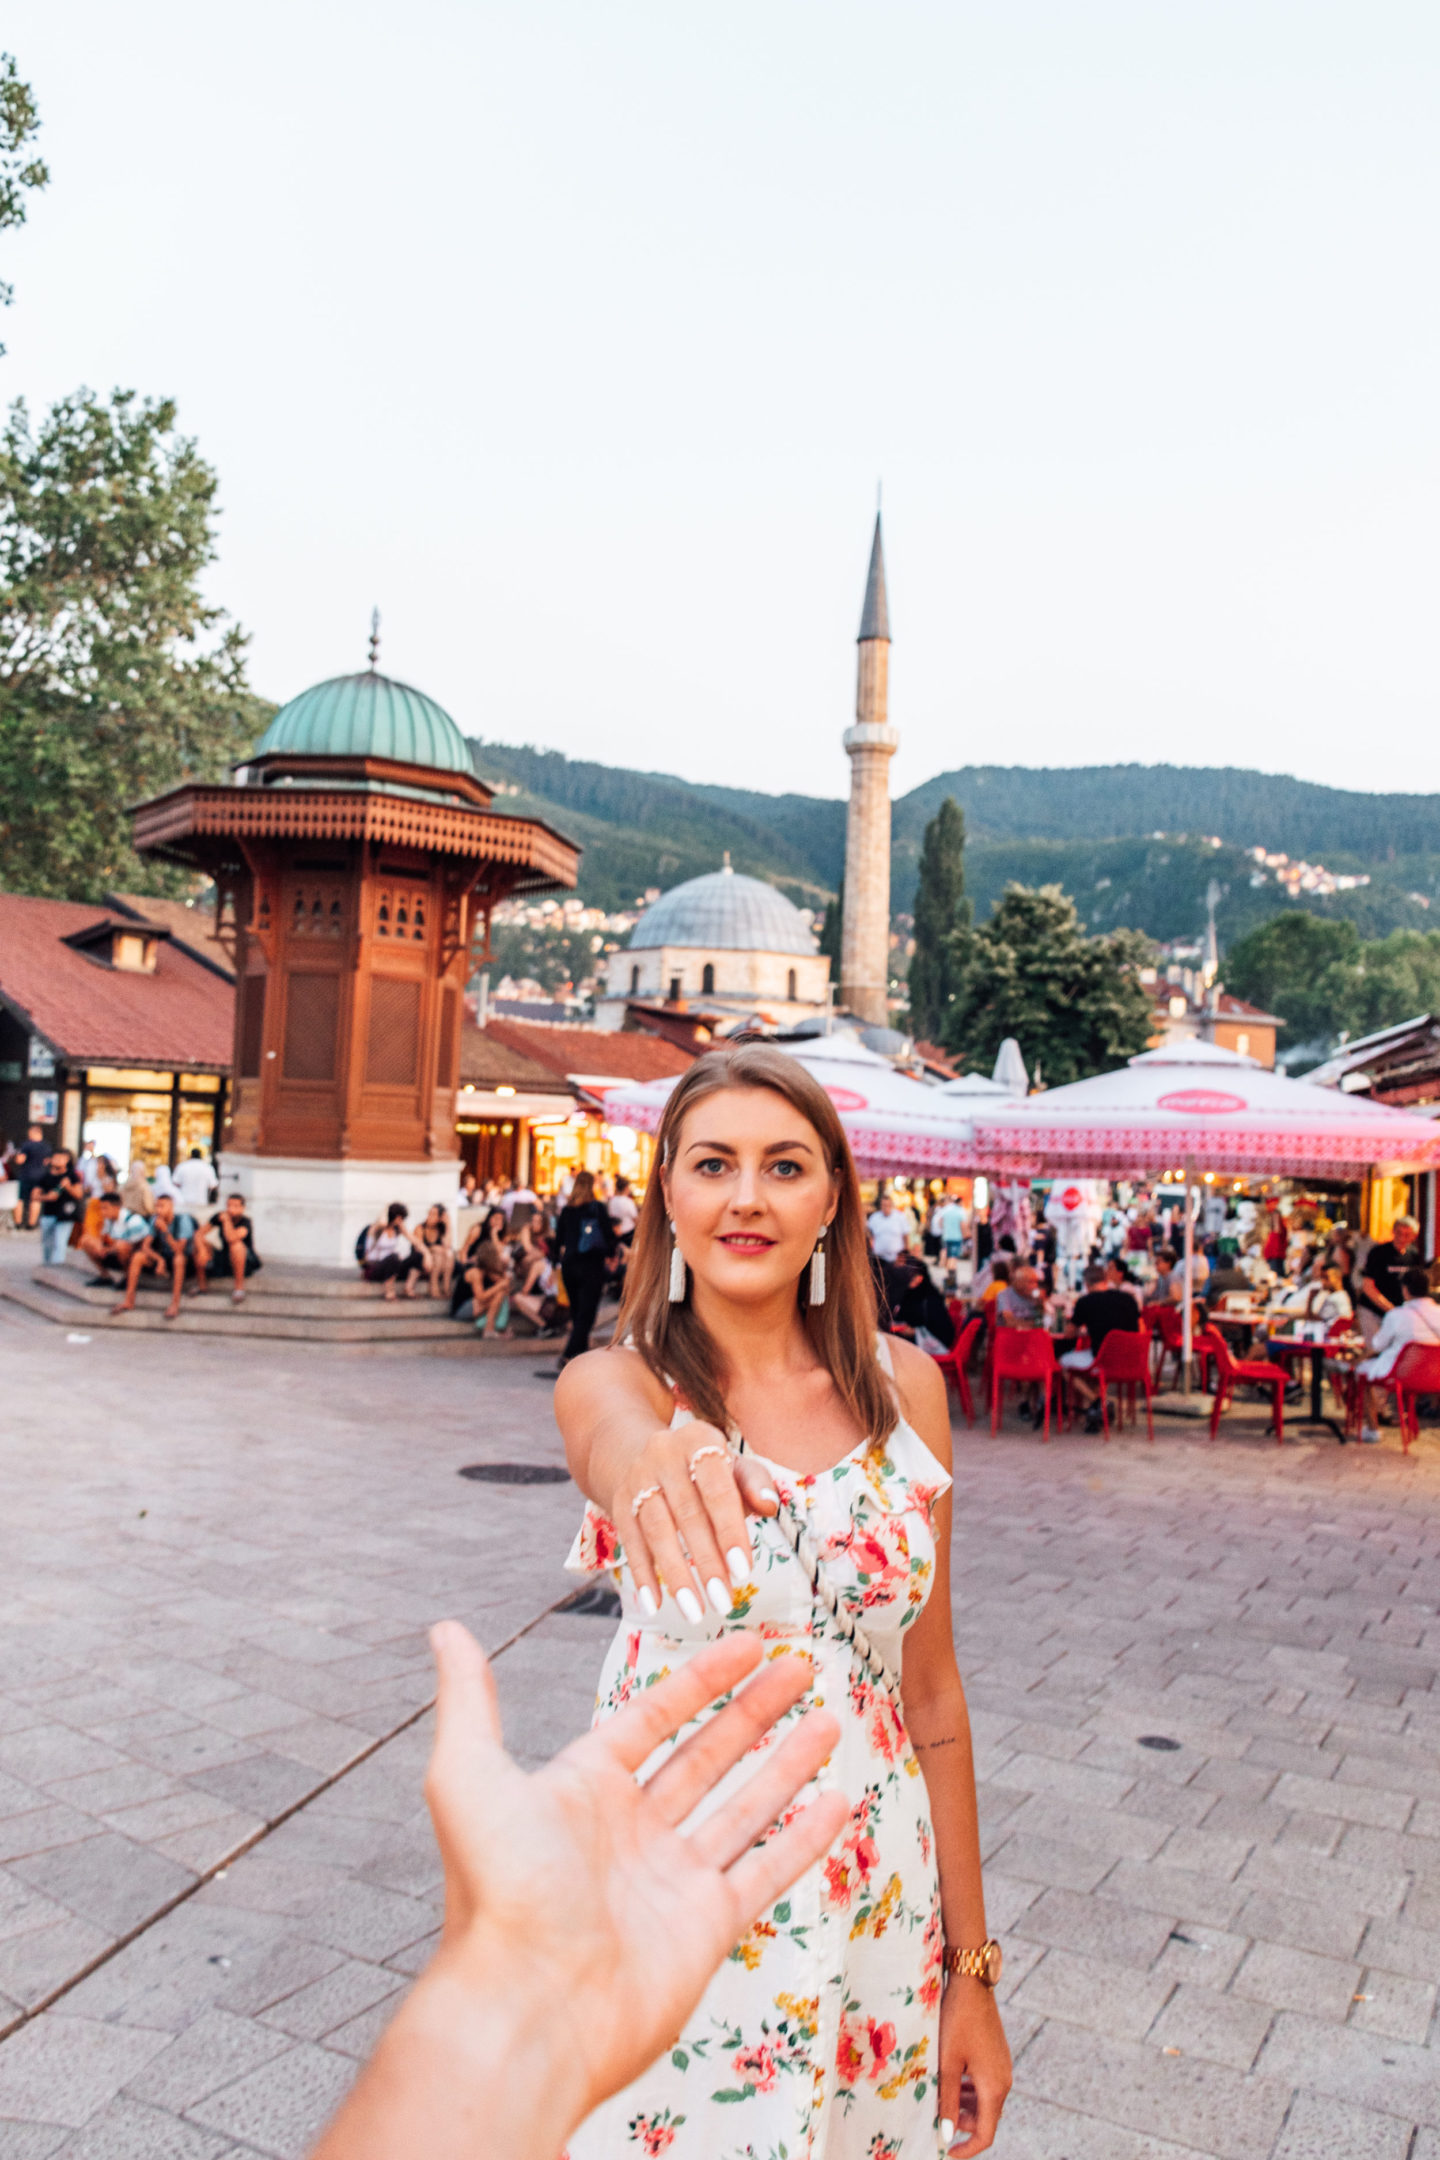 Baščaršija in Sarajevo: Eine Reise im Herzen Balkans